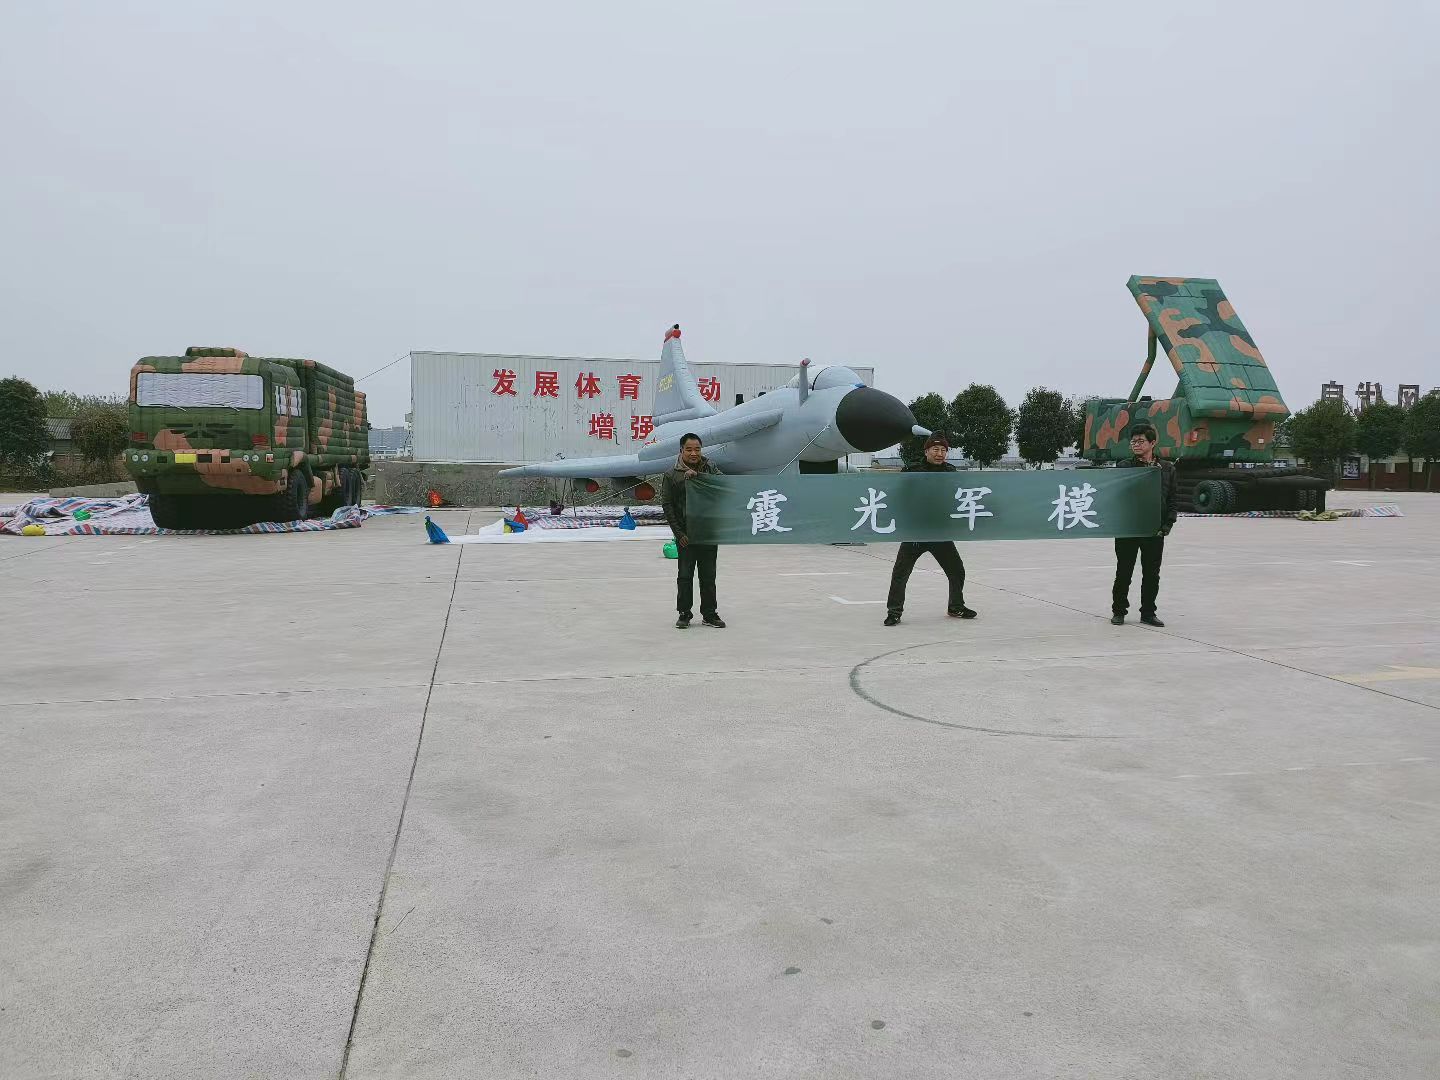 元江专家称引发关注的无人飞艇或为探空气球:主要用于气象观测